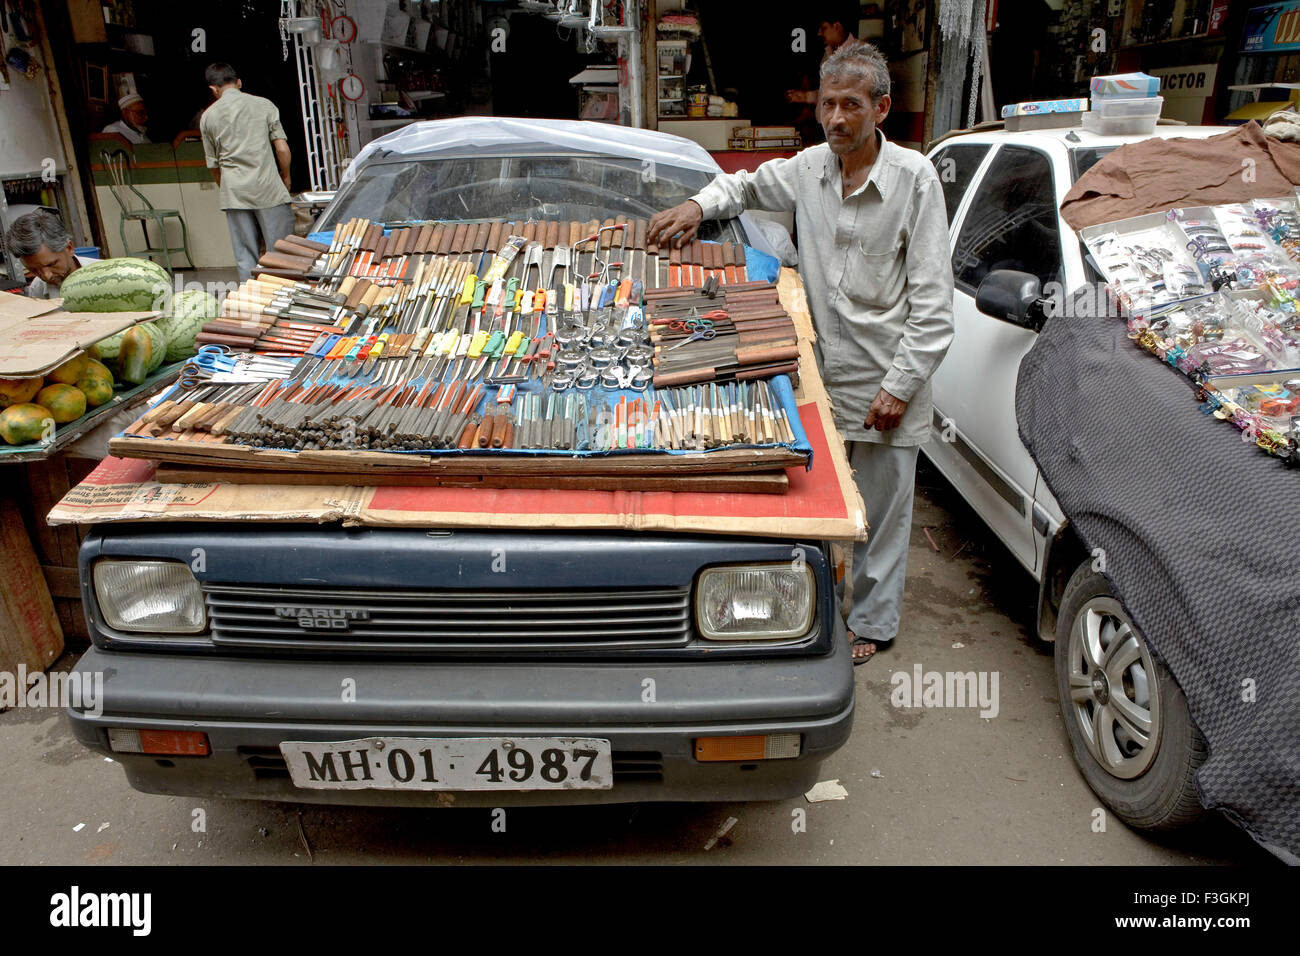 Un Hawker trouve un moyen ingénieux pour afficher son ware sur le capot d'une voiture ; Bombay Mumbai Maharashtra ; Inde ; Banque D'Images